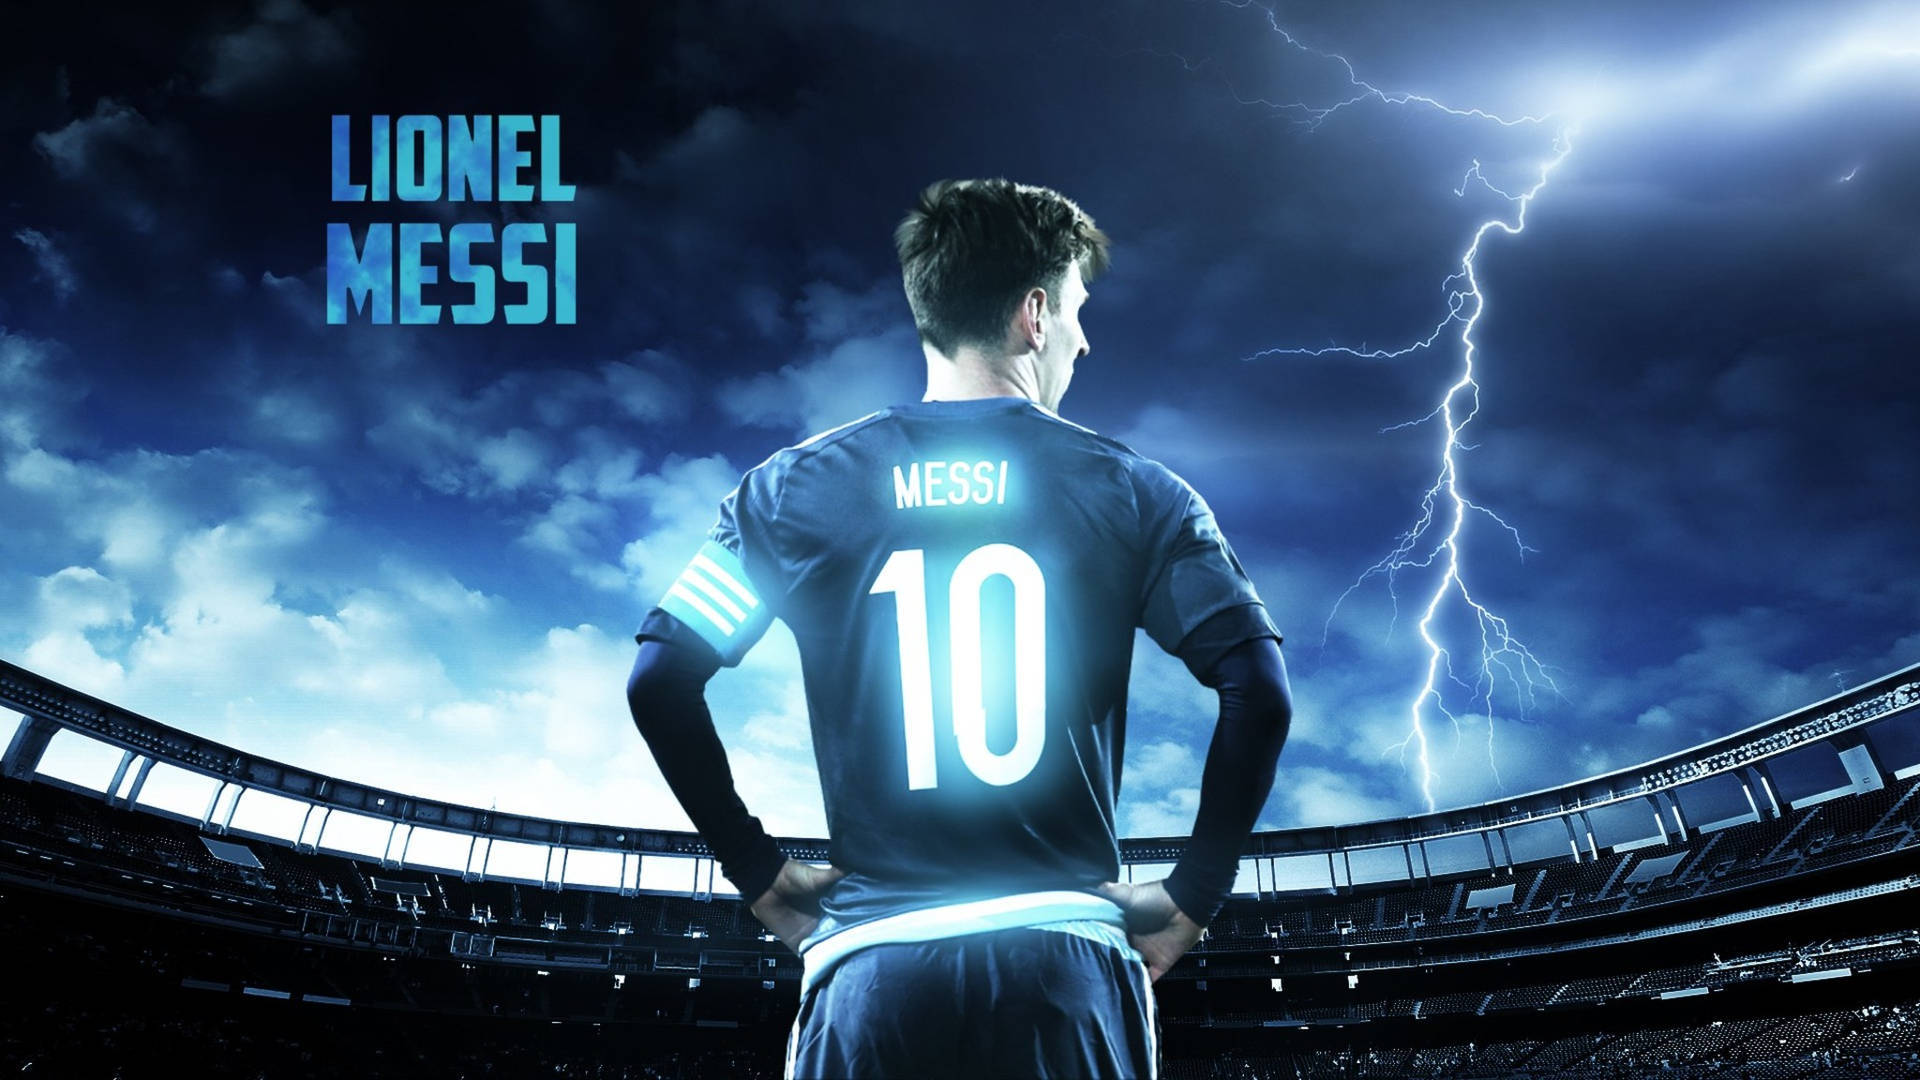 Lionel Messi Lightning Stadium